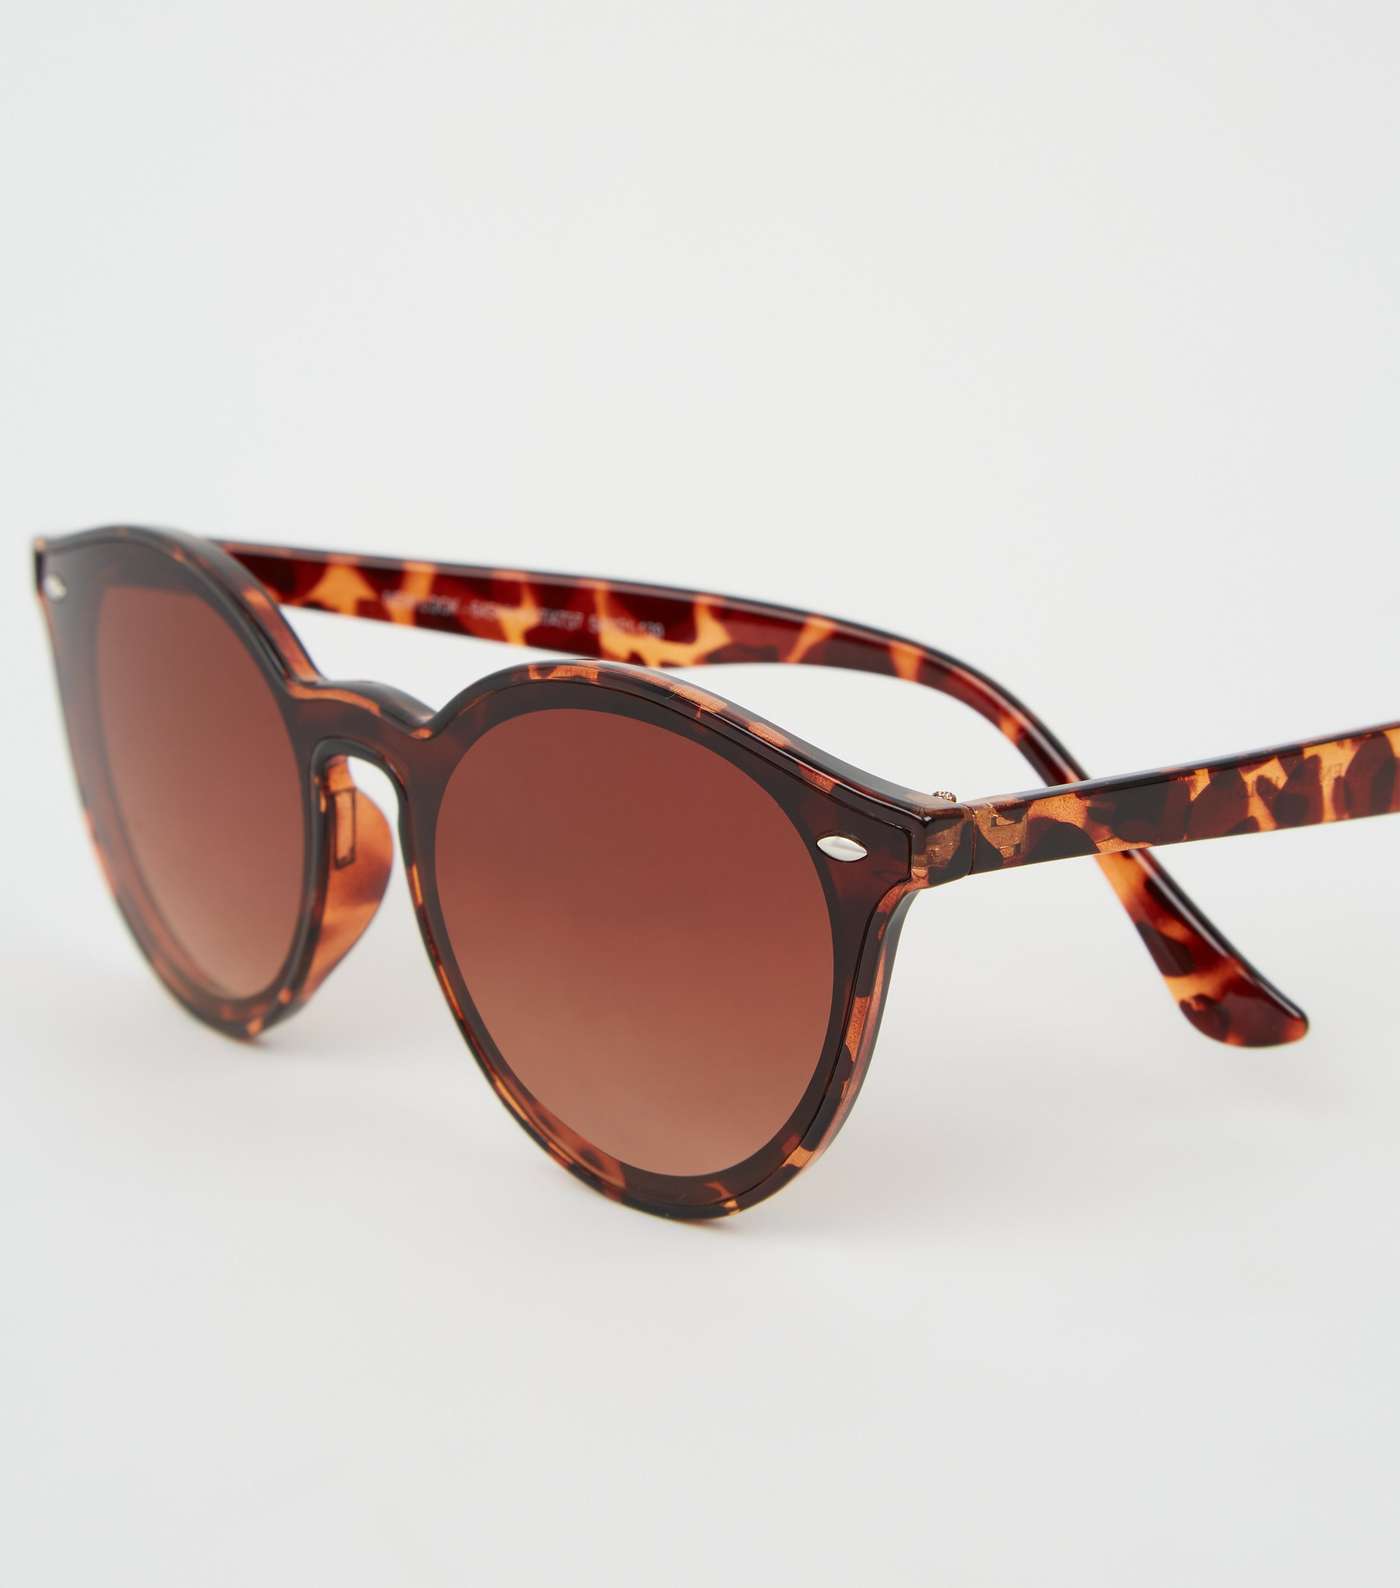 Girls Dark Brown Tortoiseshell Effect Sunglasses Image 4